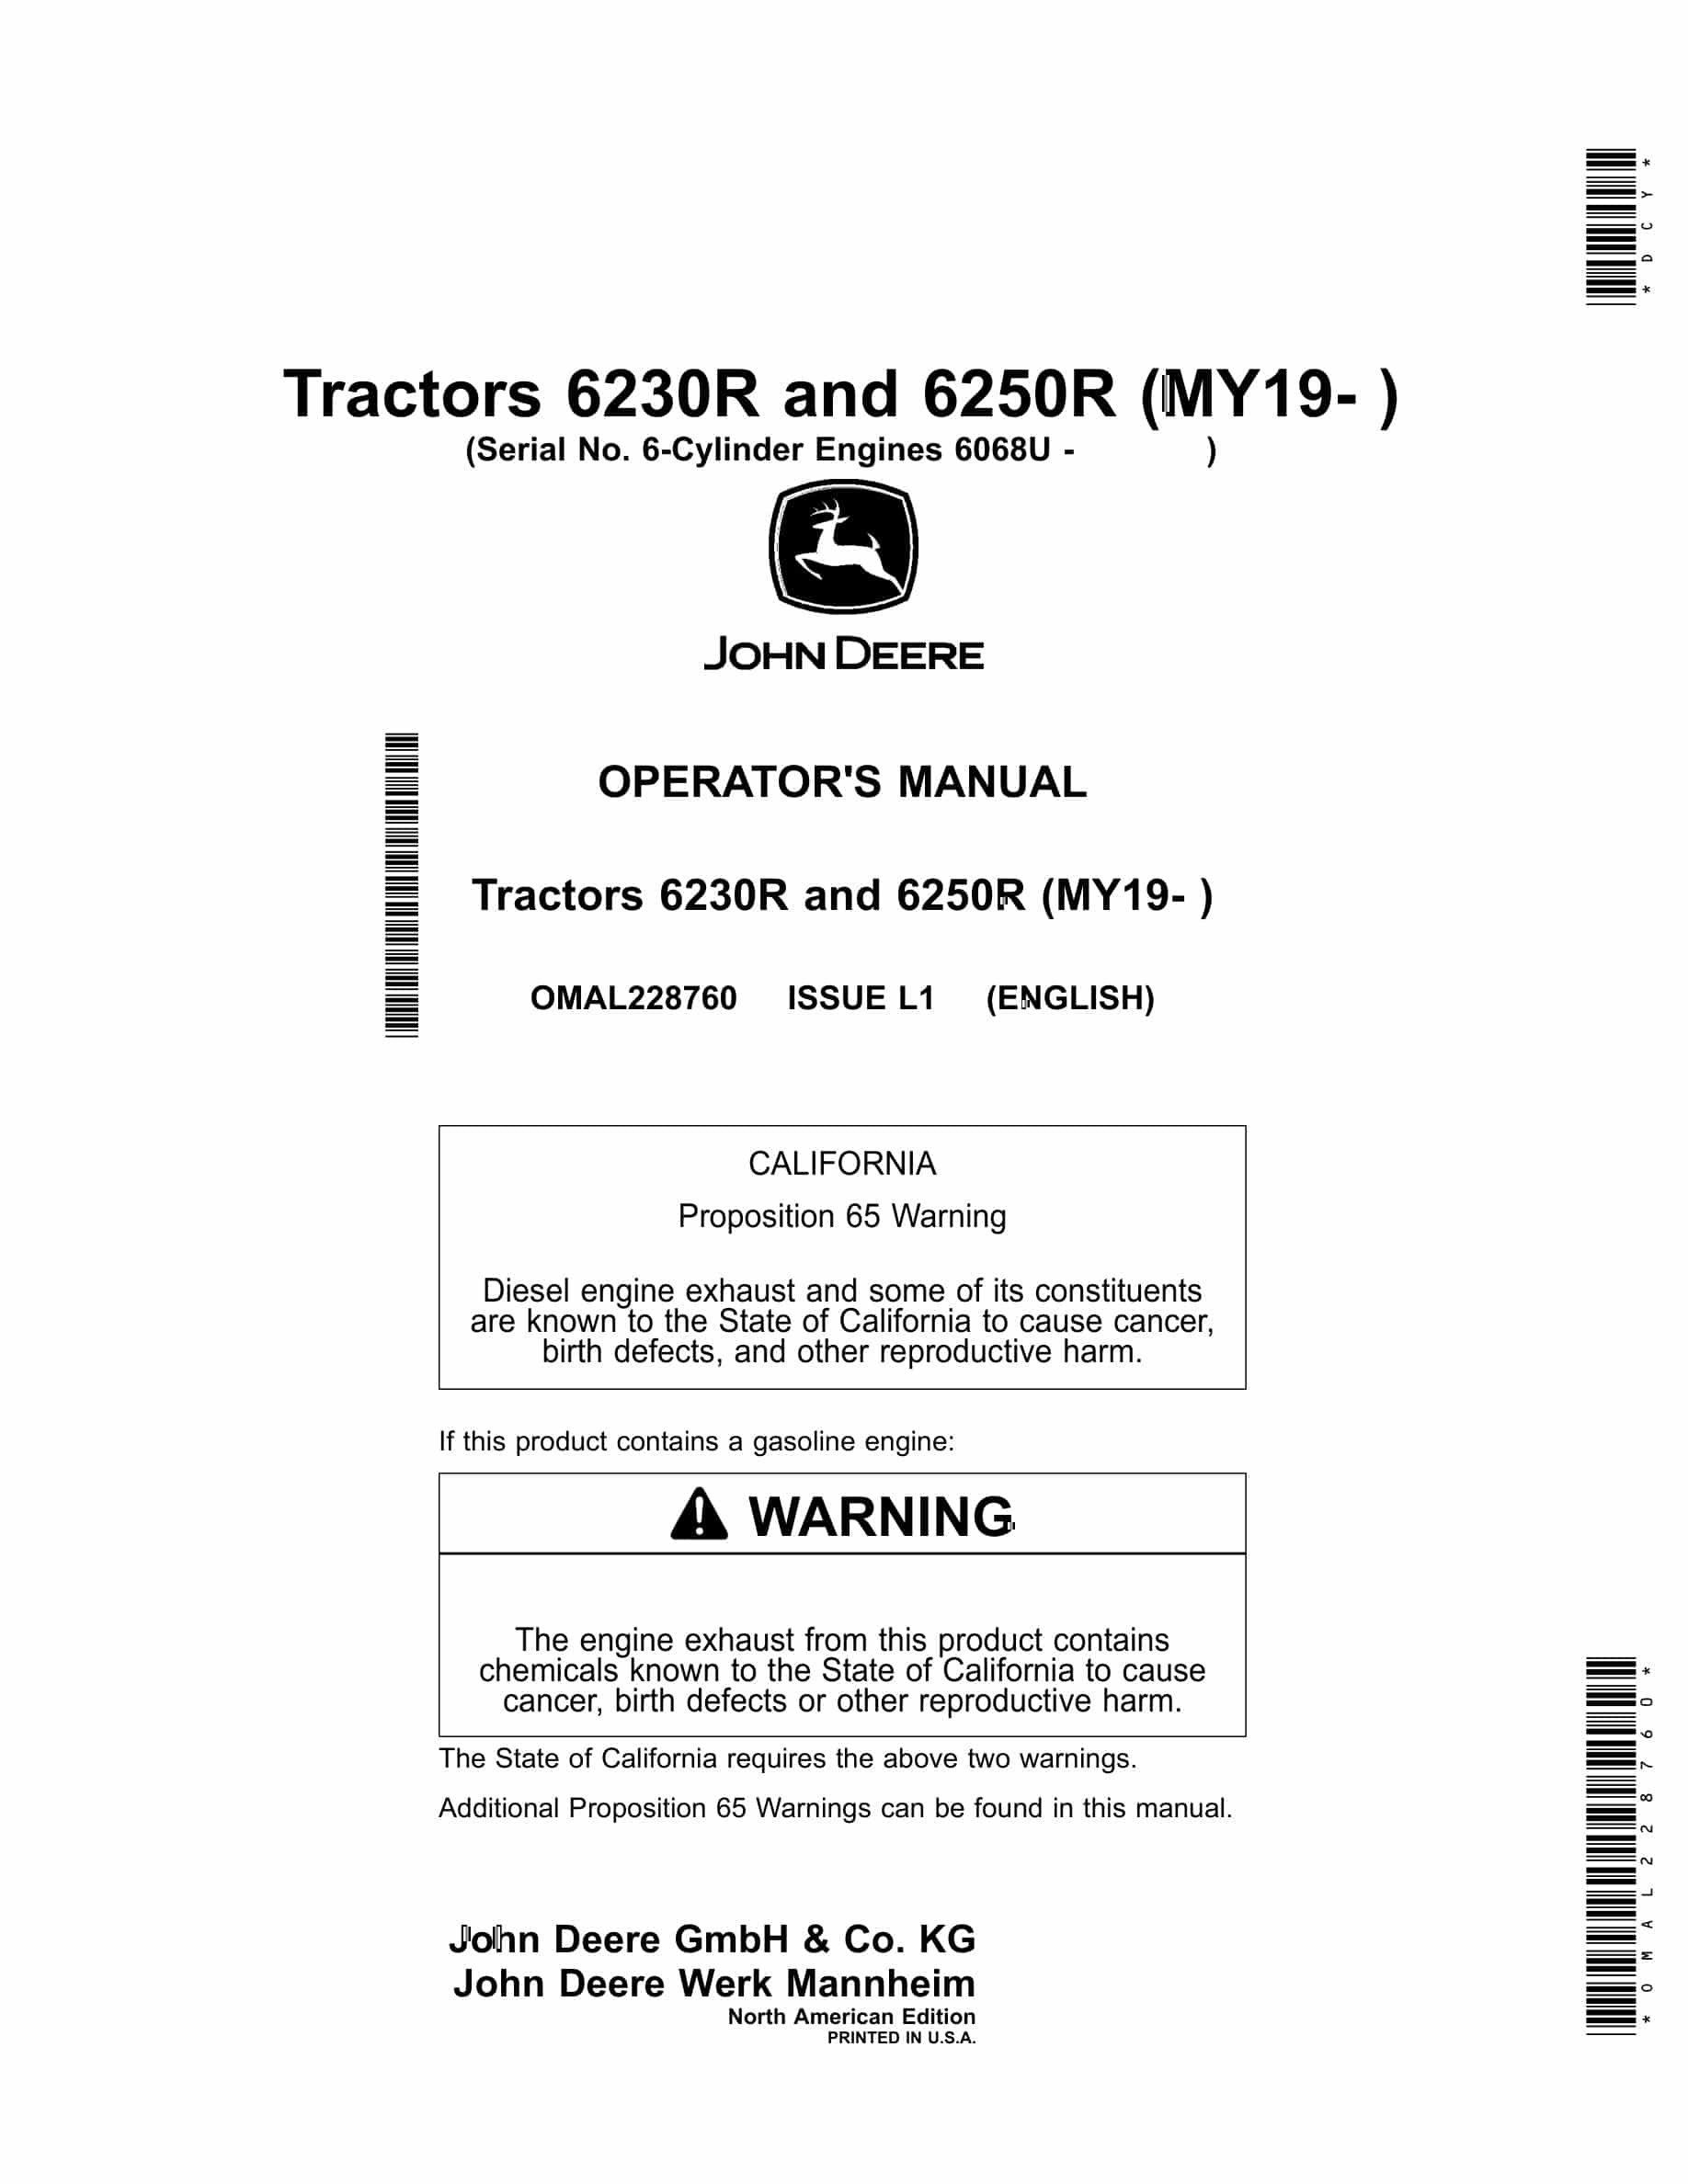 John Deere 6230r And 6250r Tractors Operator Manuals OMAL228760-1